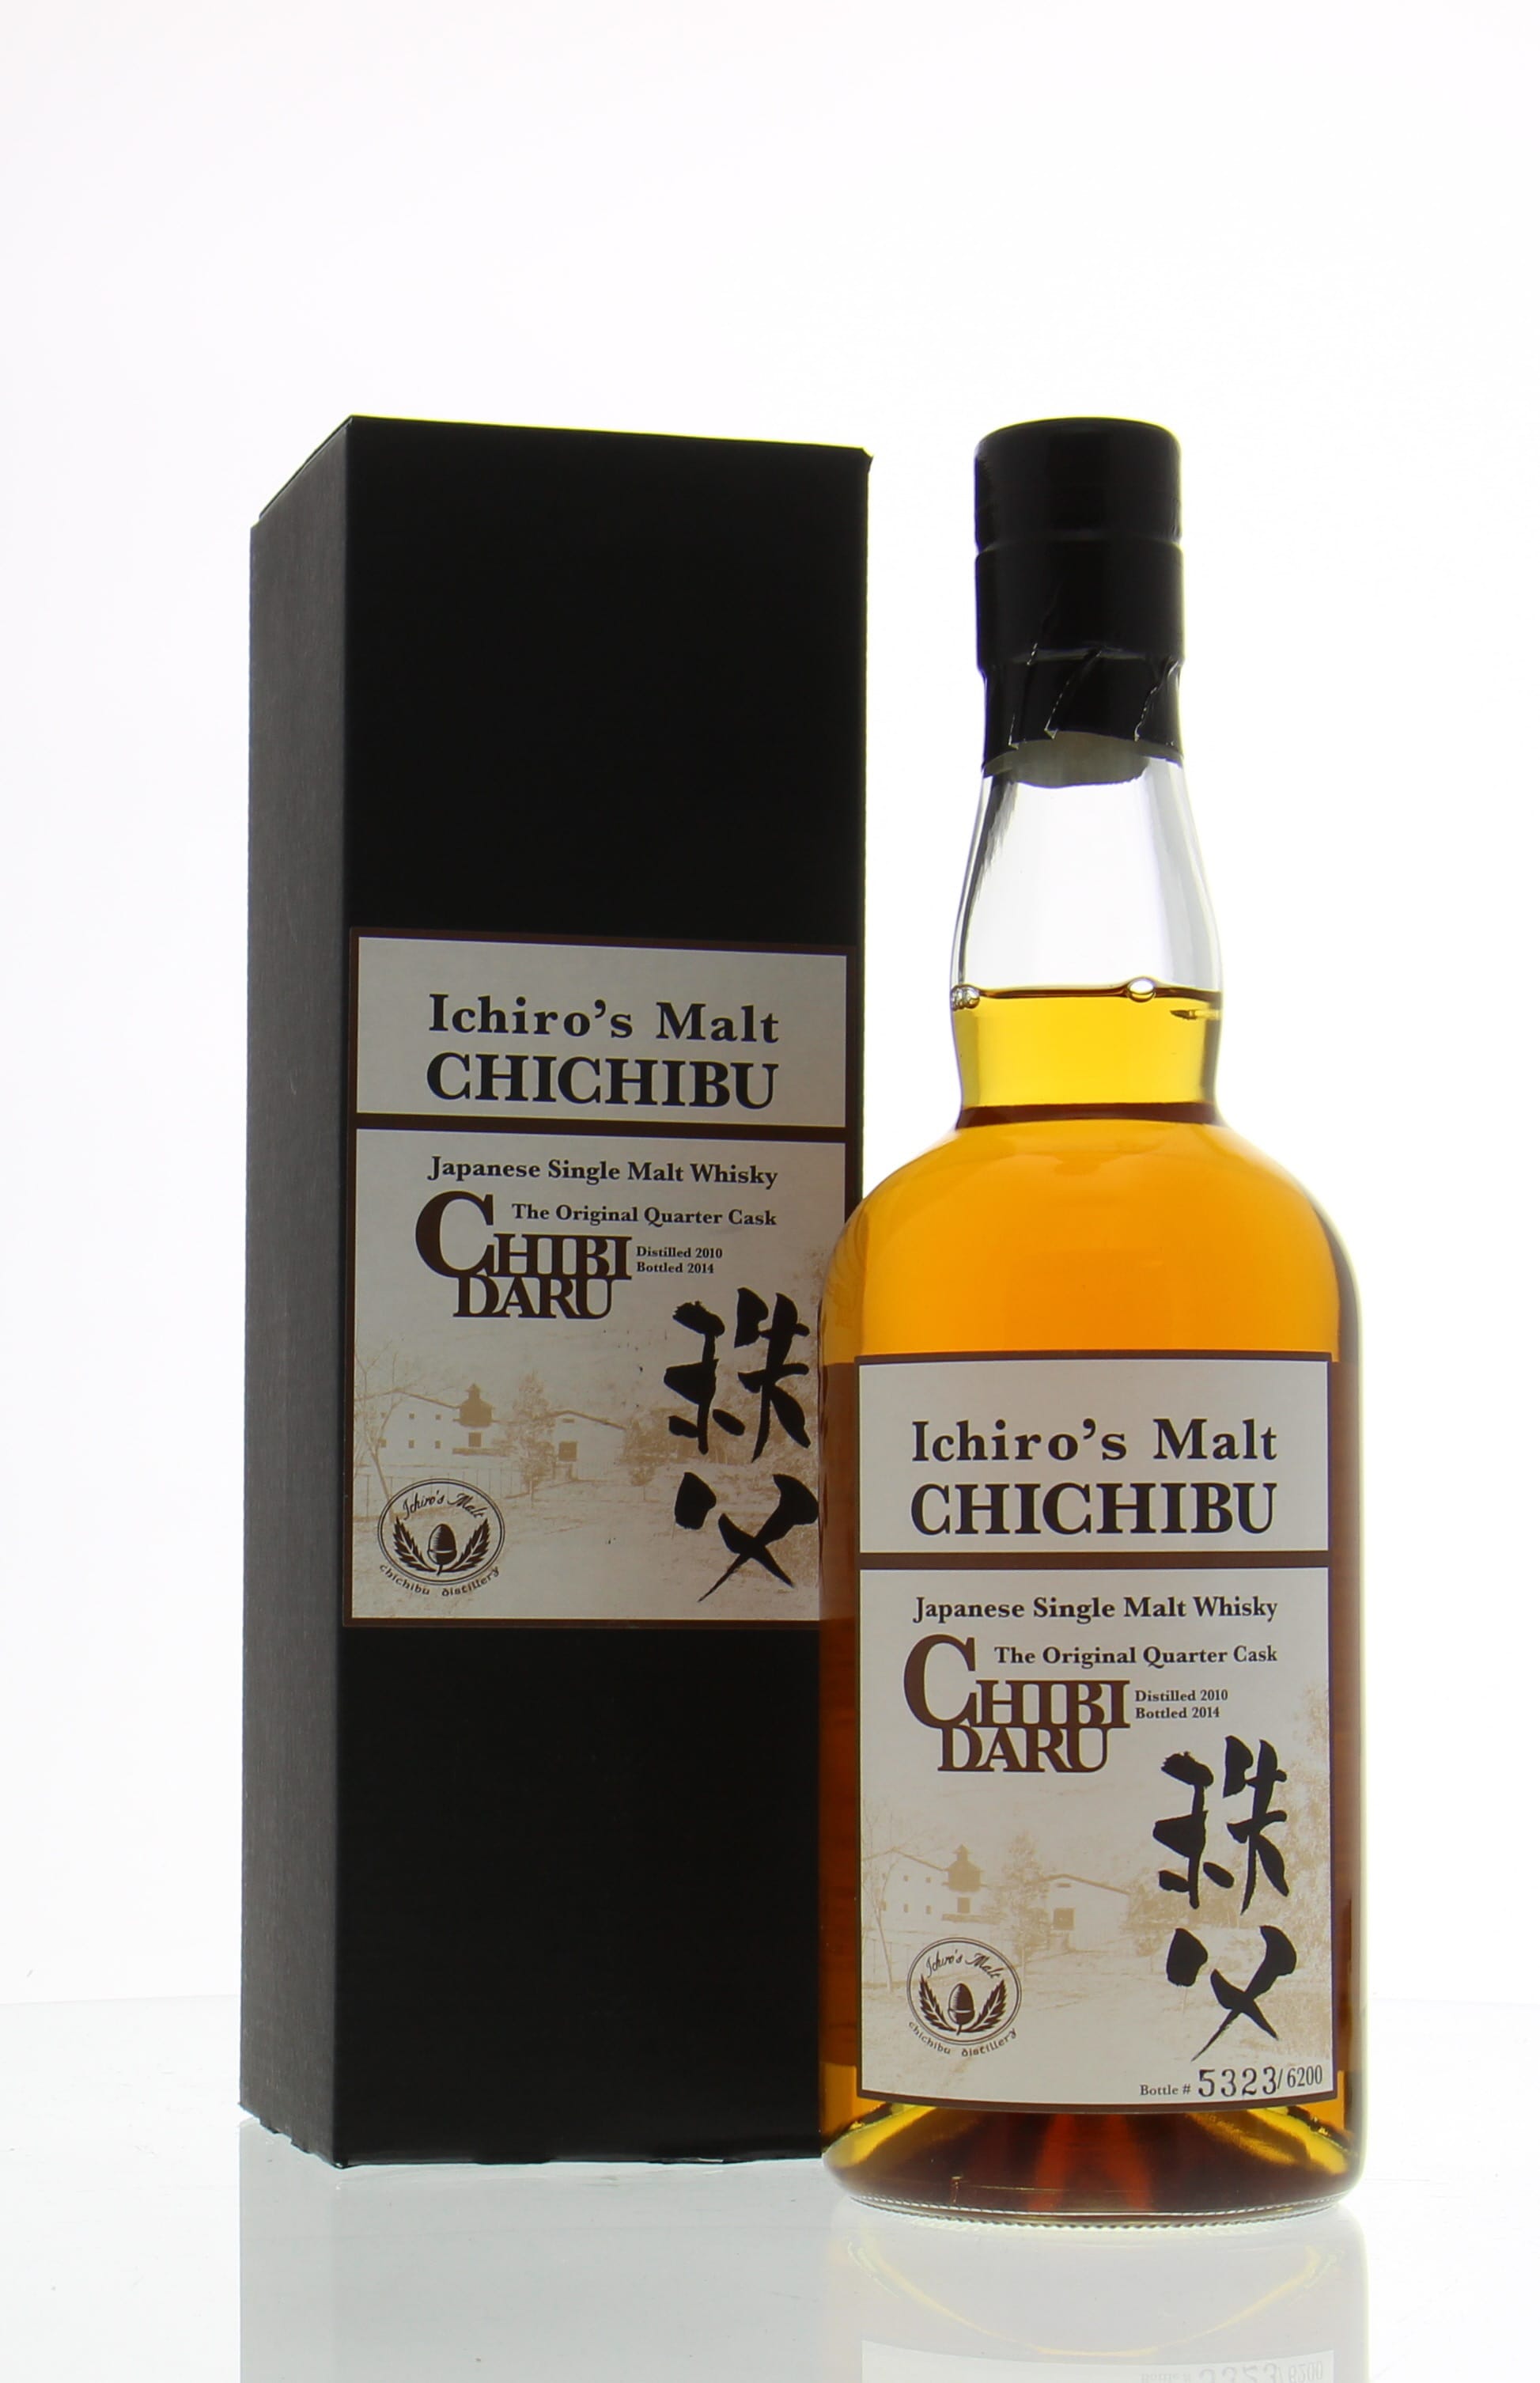 Chichibu - Ichiro's Malt Chibidaru 2010 53.5% 2010 Perfect